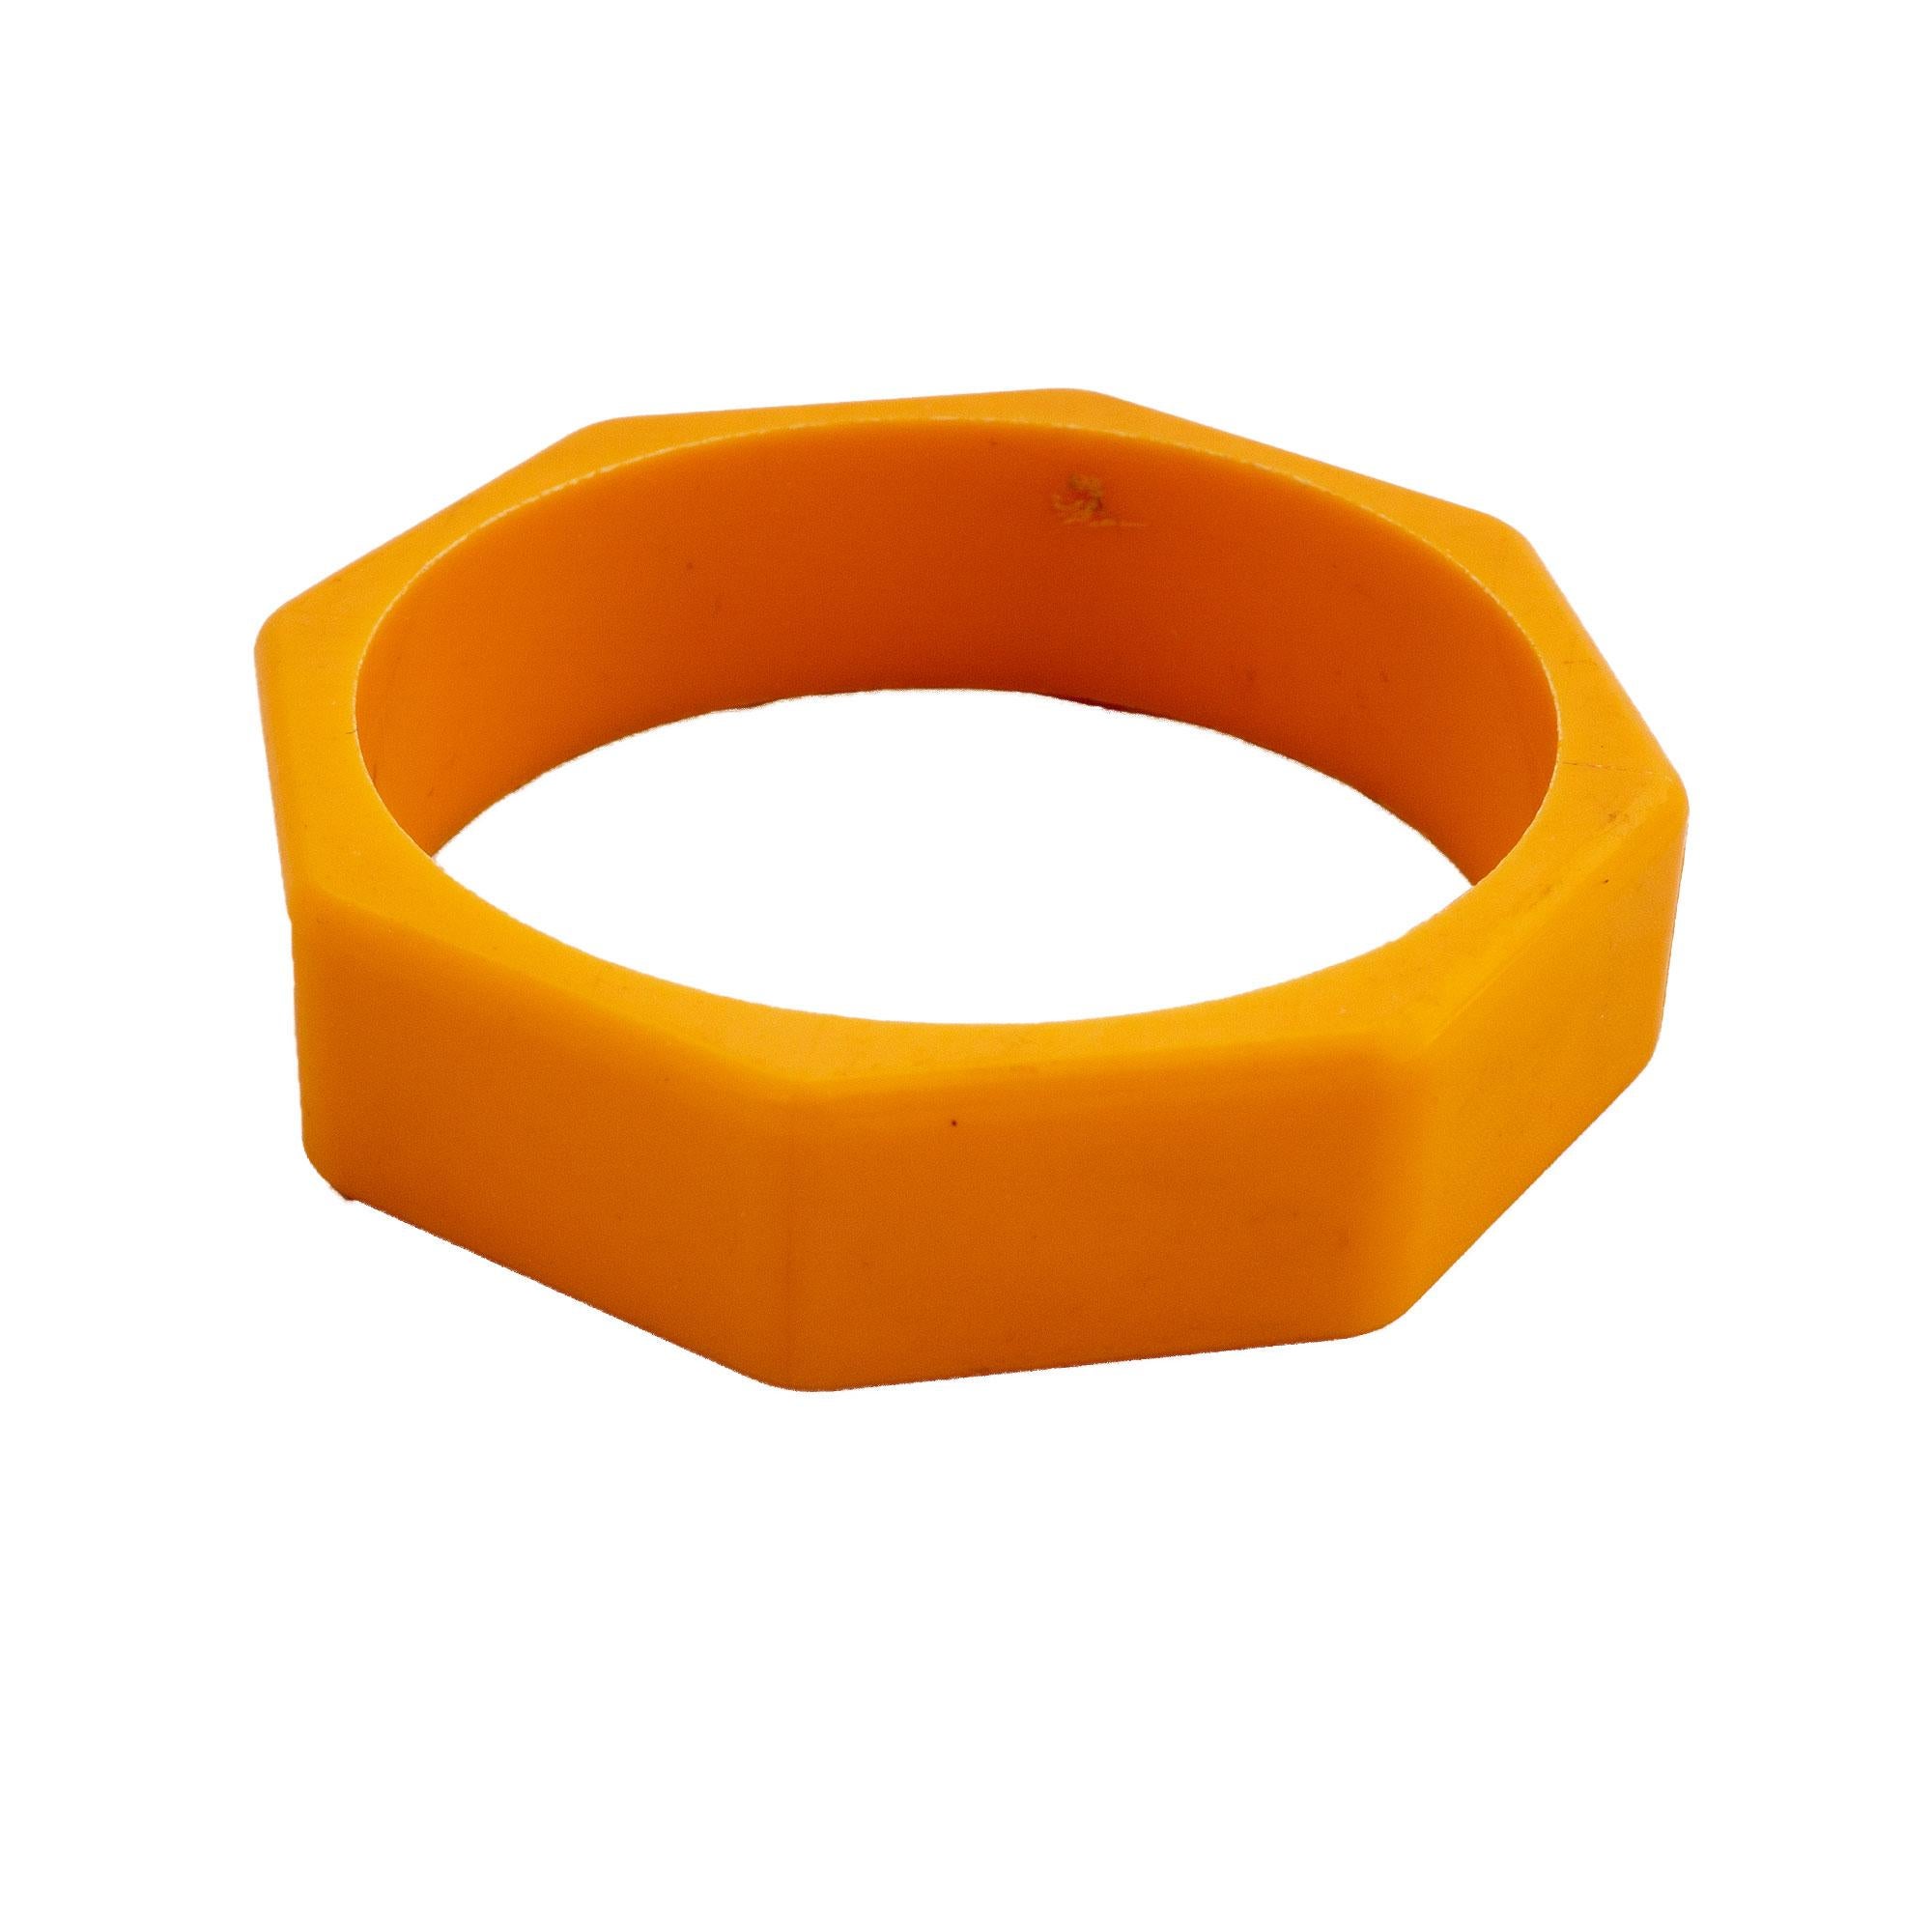 orange wristband meaning